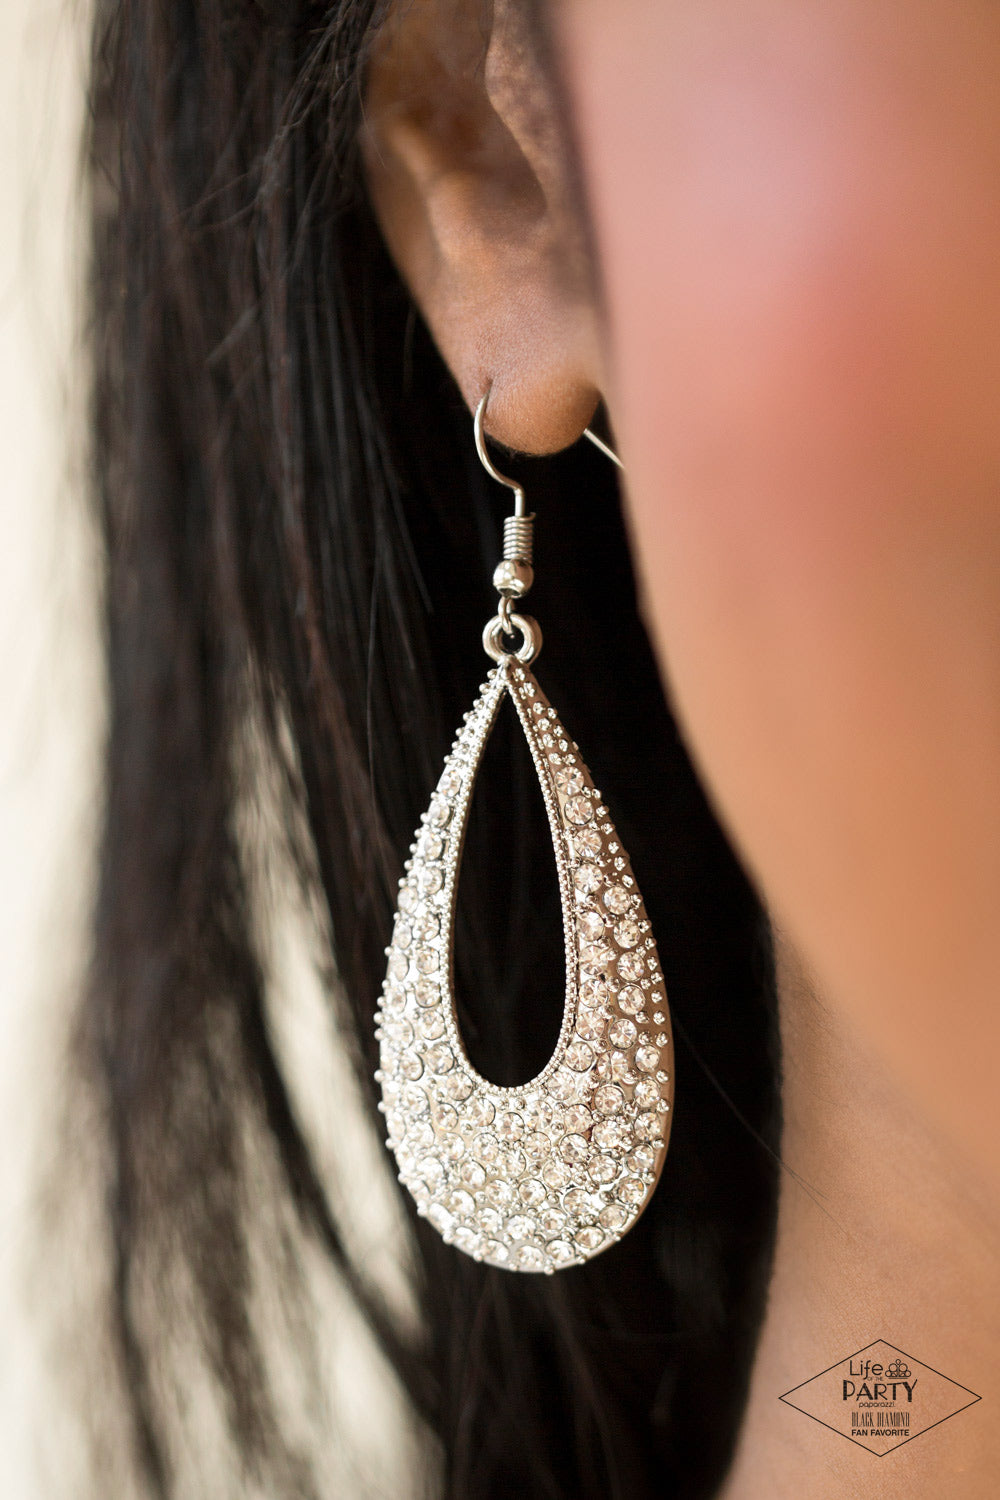 Big-Time Spender - White gem earrings